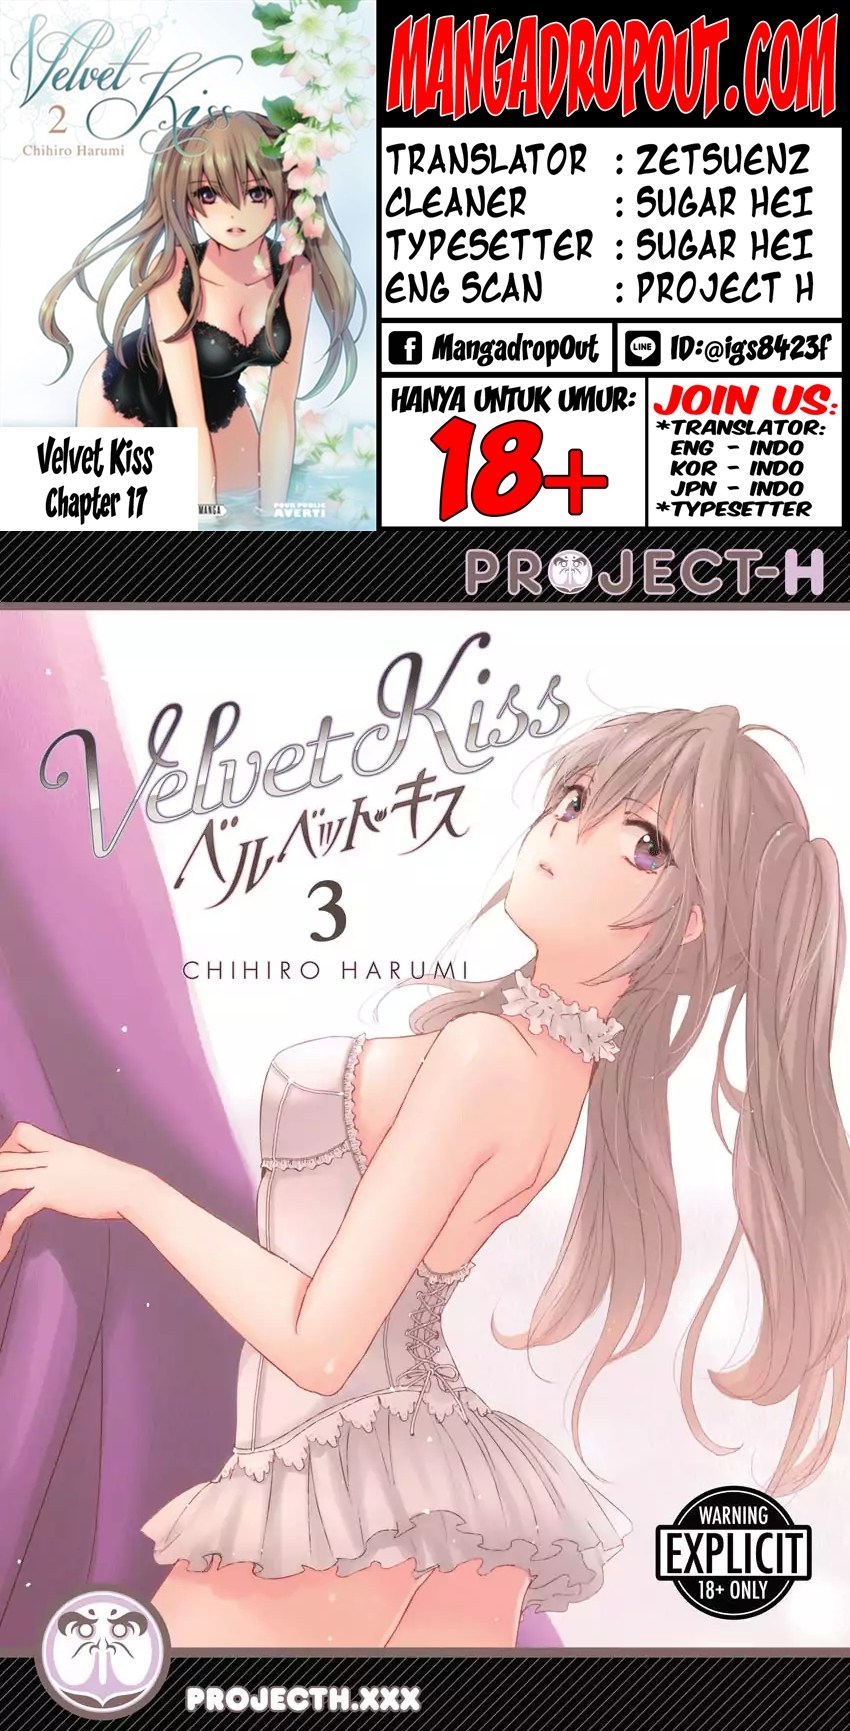 Velvet Kiss Chapter 17